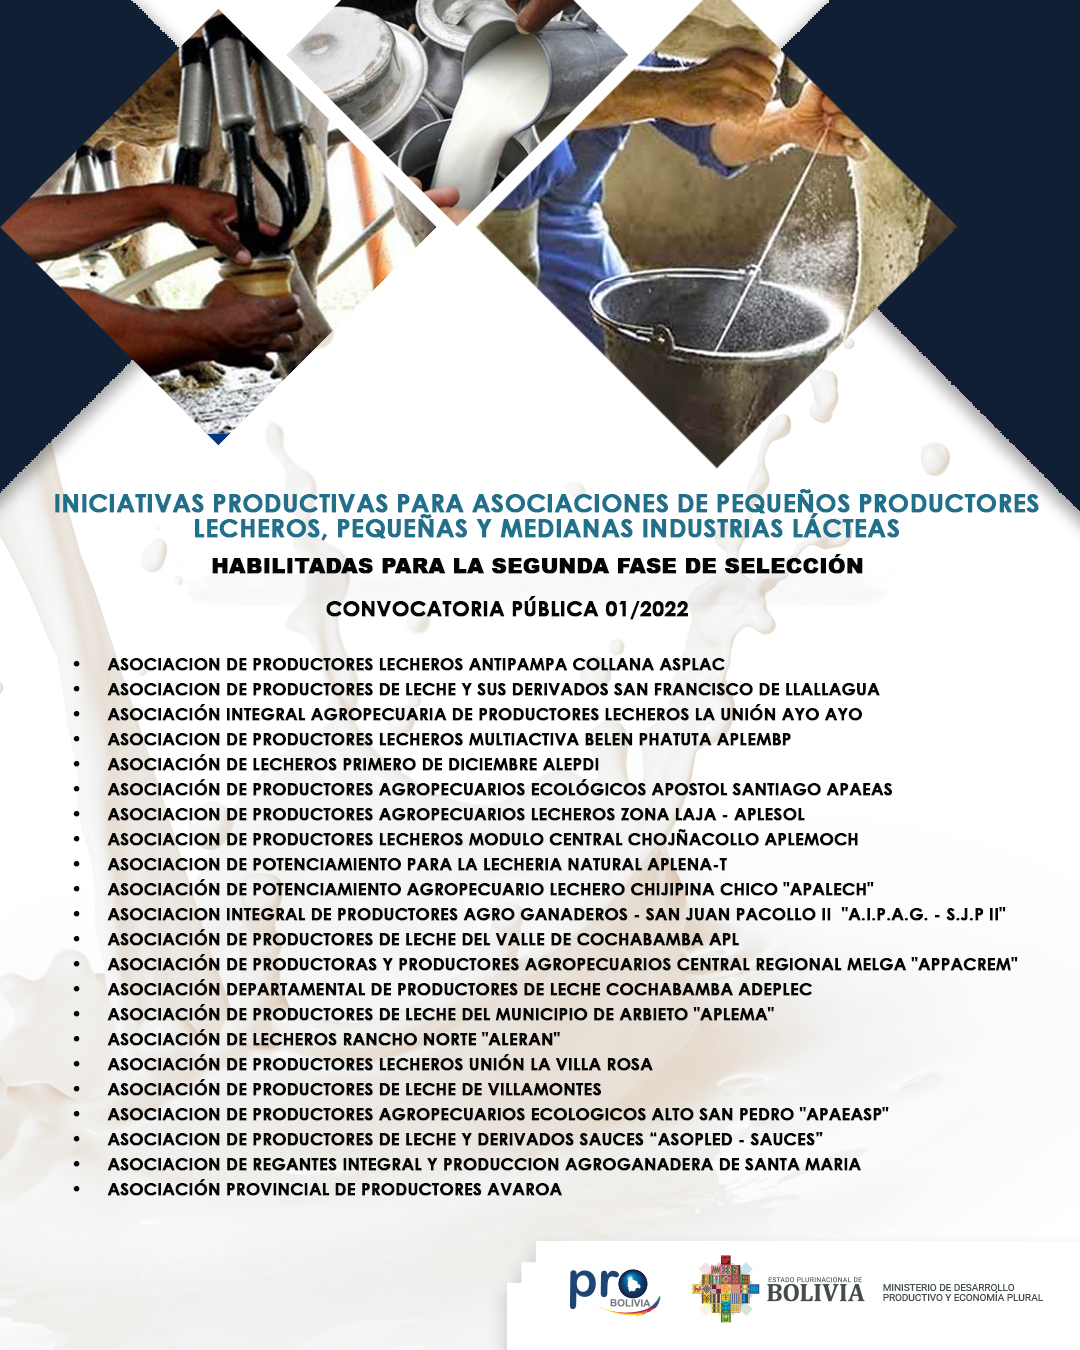 Iniciativas Productivas para Asociaciones de Pequeños Productores Lecheros, Pequeñas y Medianas Industrias Lácteas, habilitadas para la Segunda Fase de selección de la CONVOCATORIA 01/2022